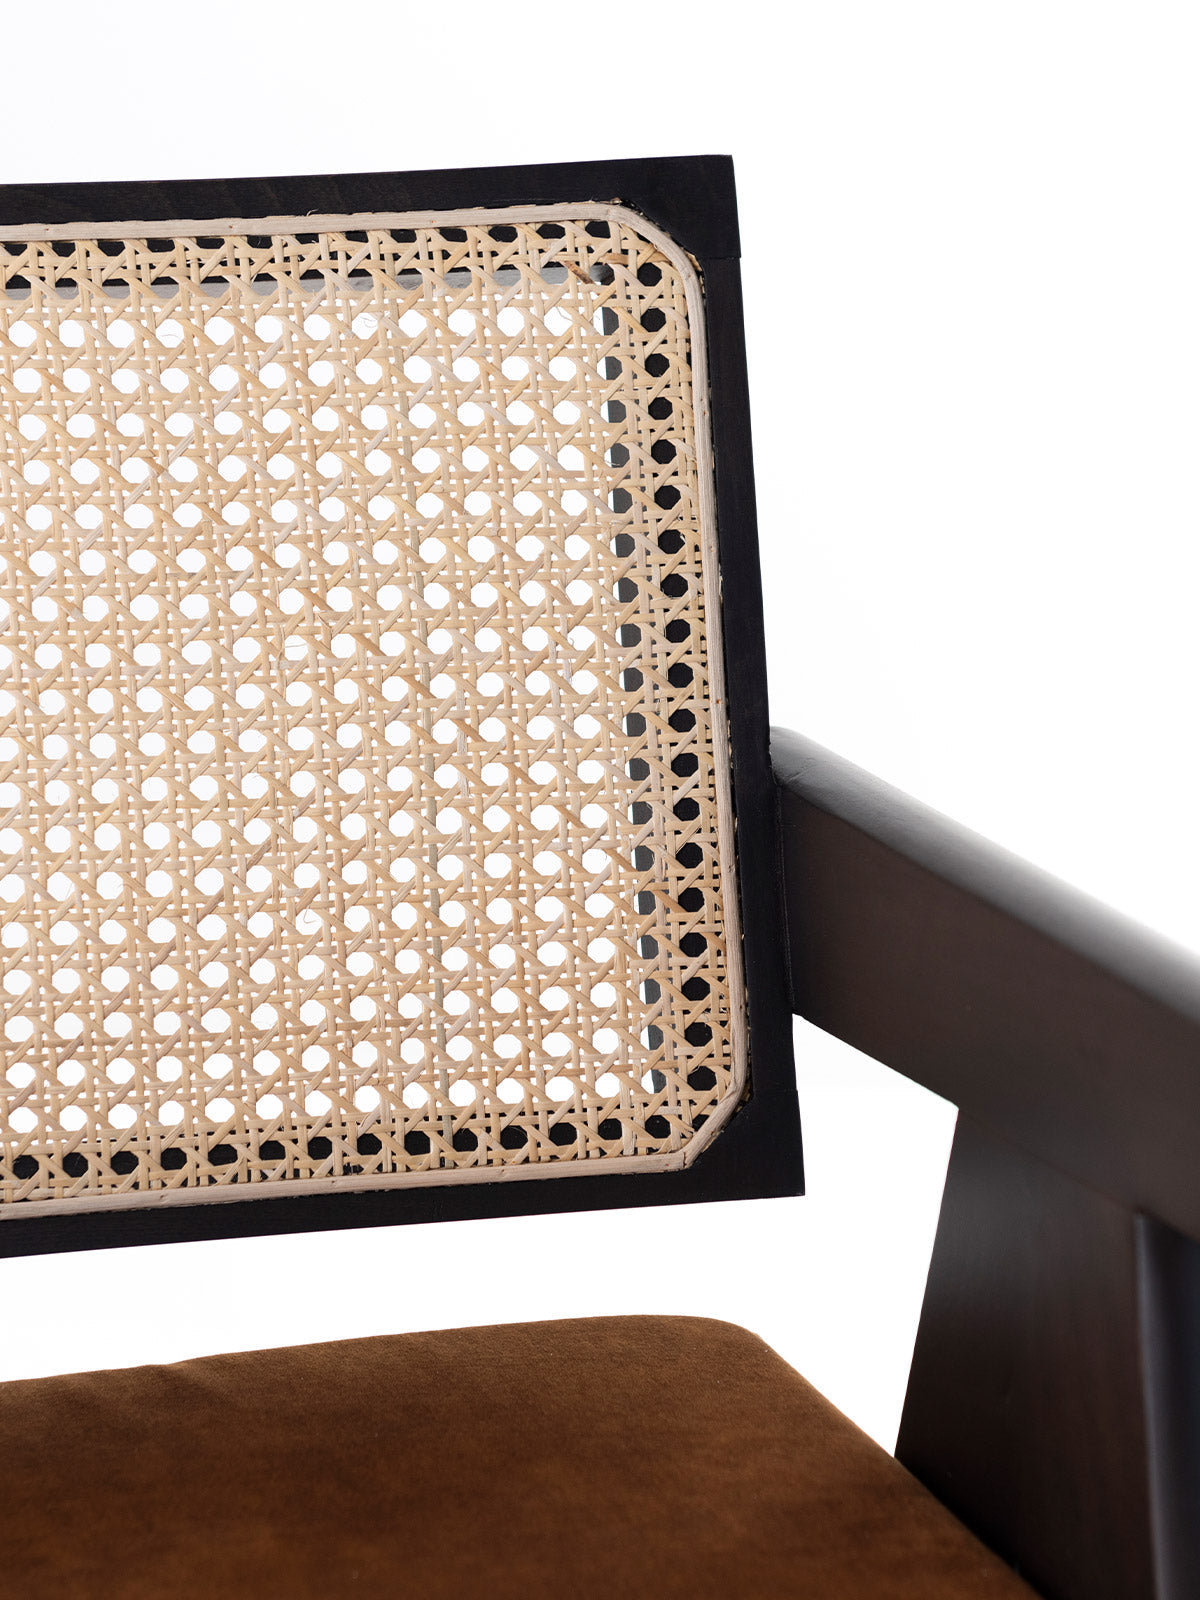 Eleganter Stuhl aus Buchenholz | Modell POLA